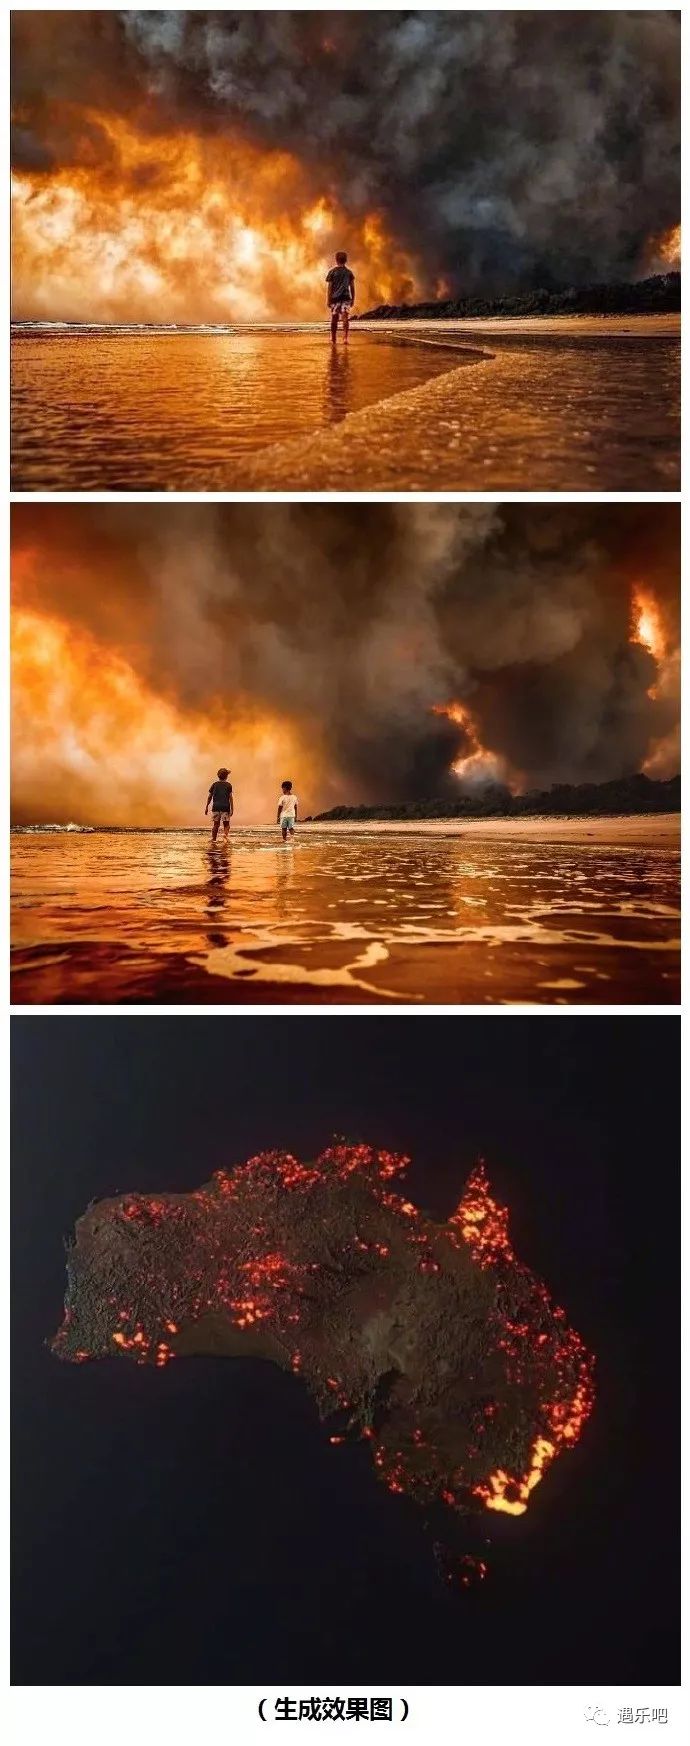 澳大利亚的史上最大林火连烧4个月从2019年烧到了2020年还没灭